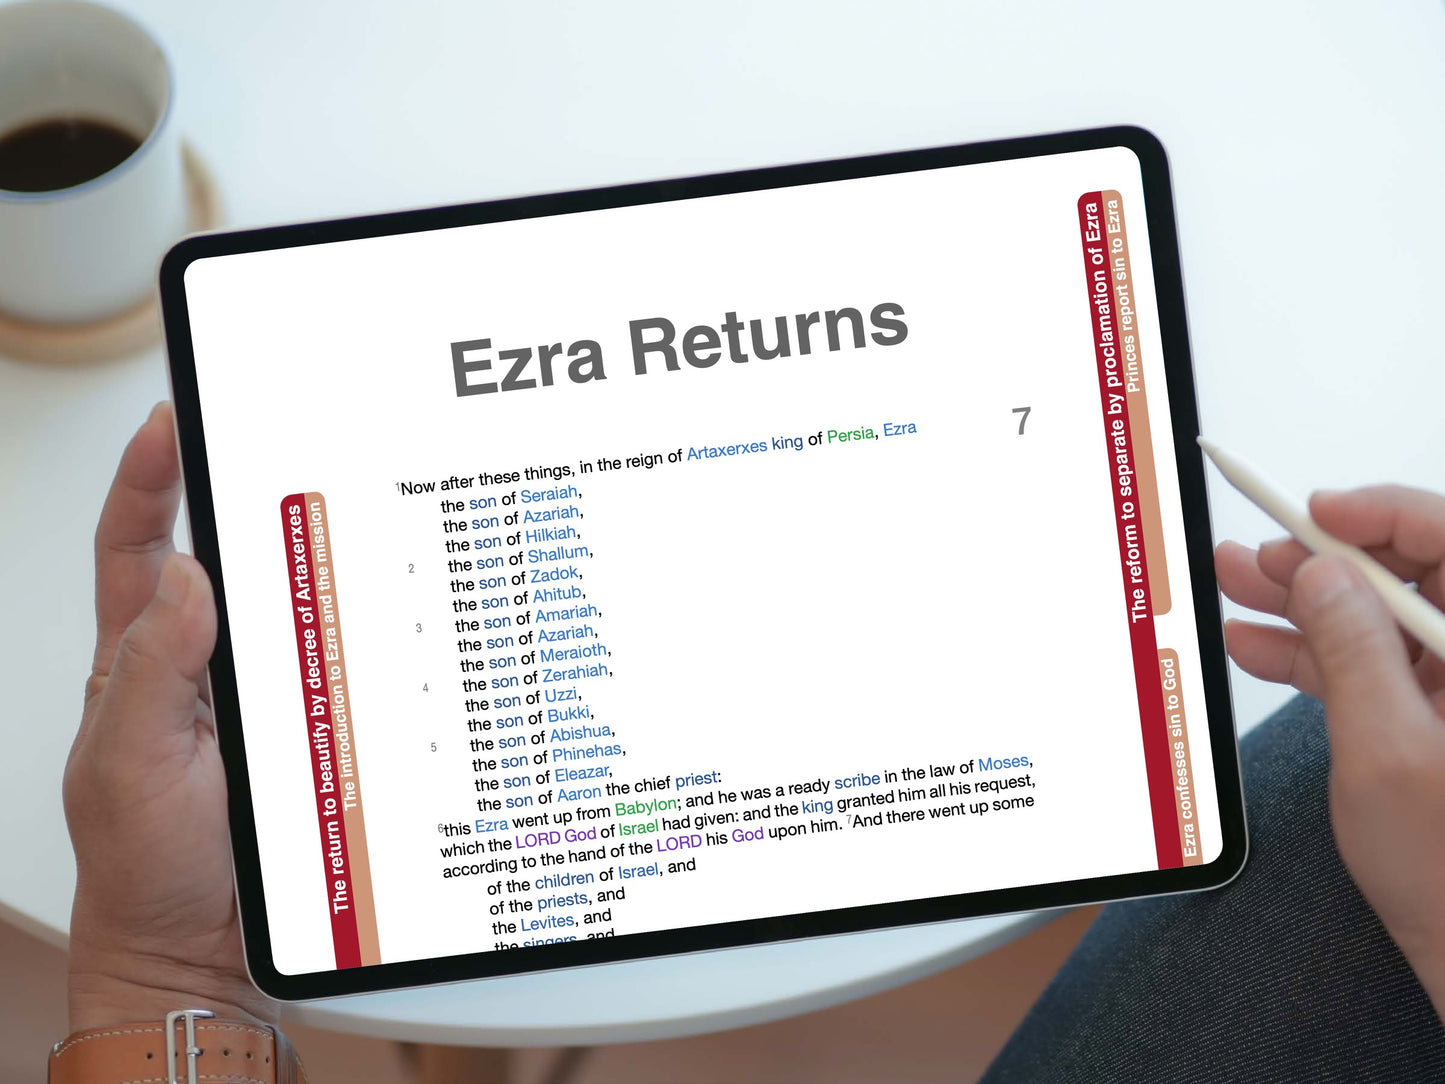 Ezra Panorama PDF